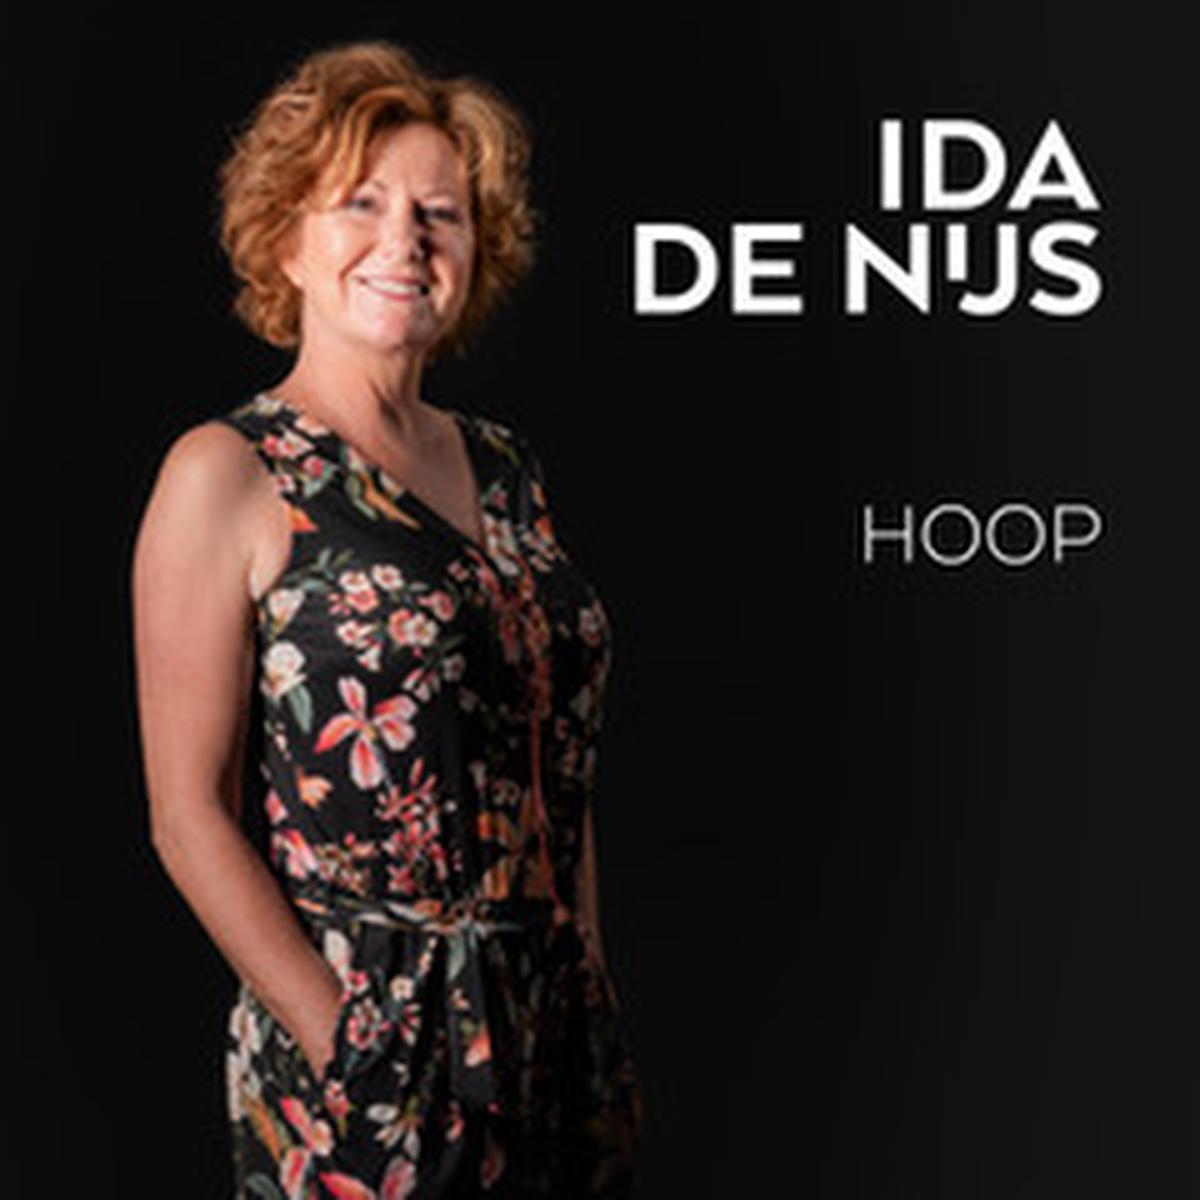 Ida de Nijs betrad als eerste ACE-studio en nam nieuwe single 'Hoop' op